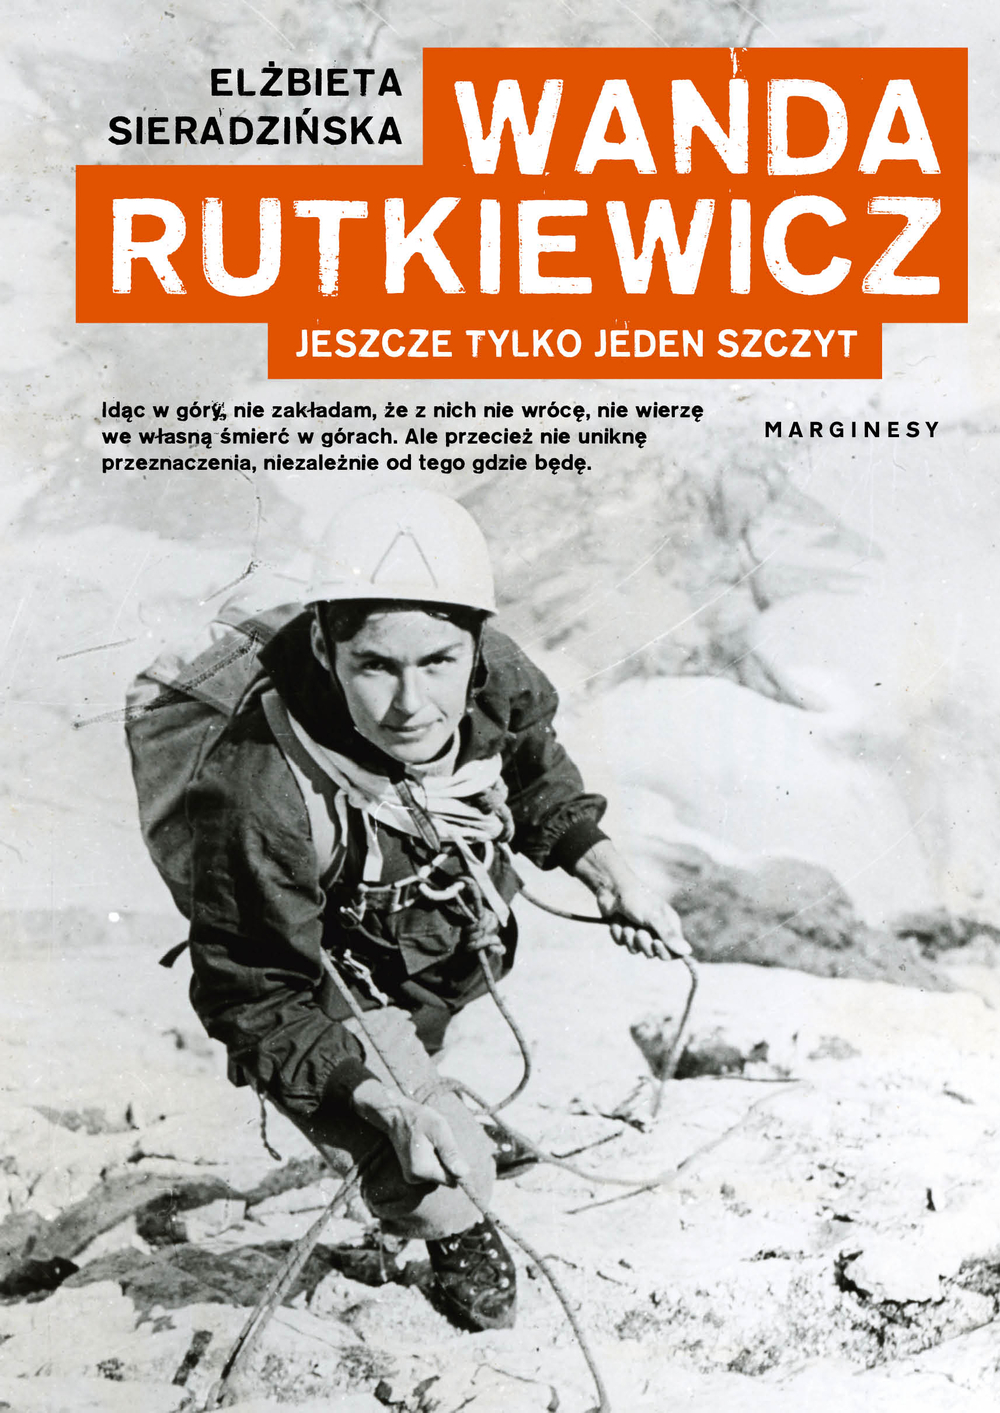 okładka książki z Wandą Rutkiewicz